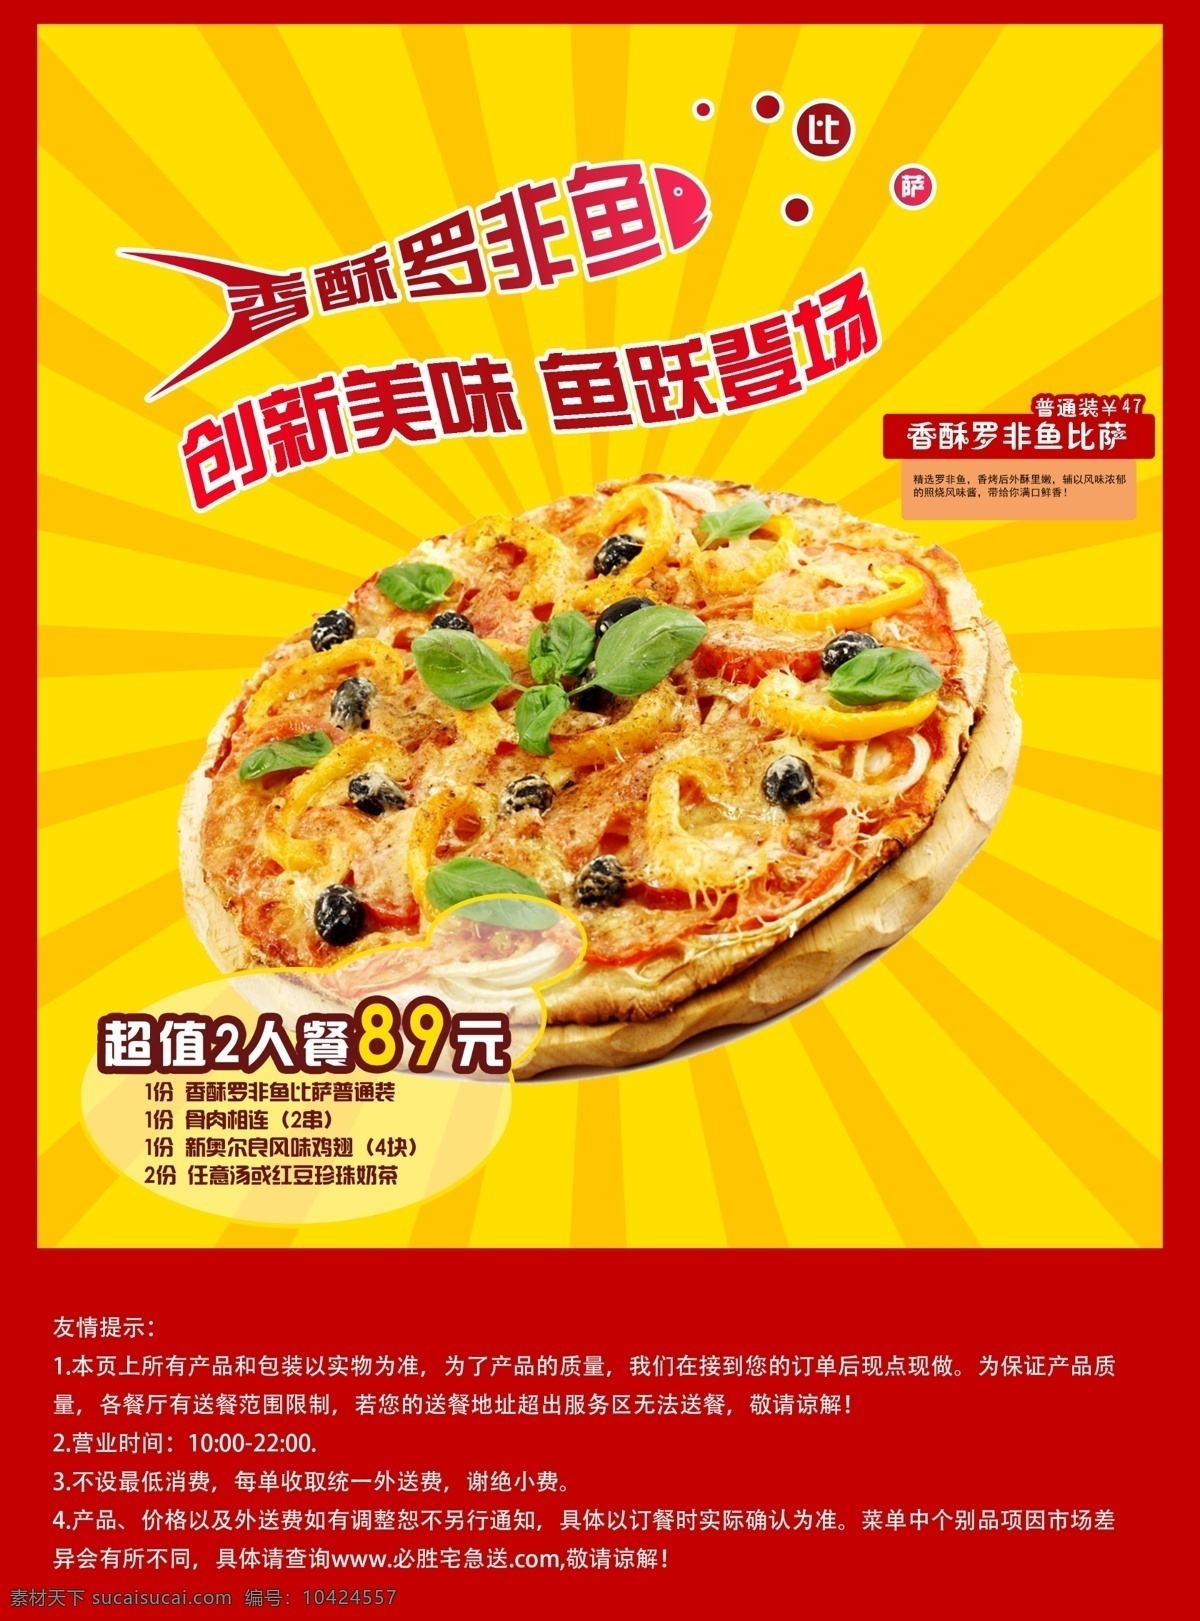 披萨单页 比萨海报 招贴海报 海报 宣传单页 食品海报